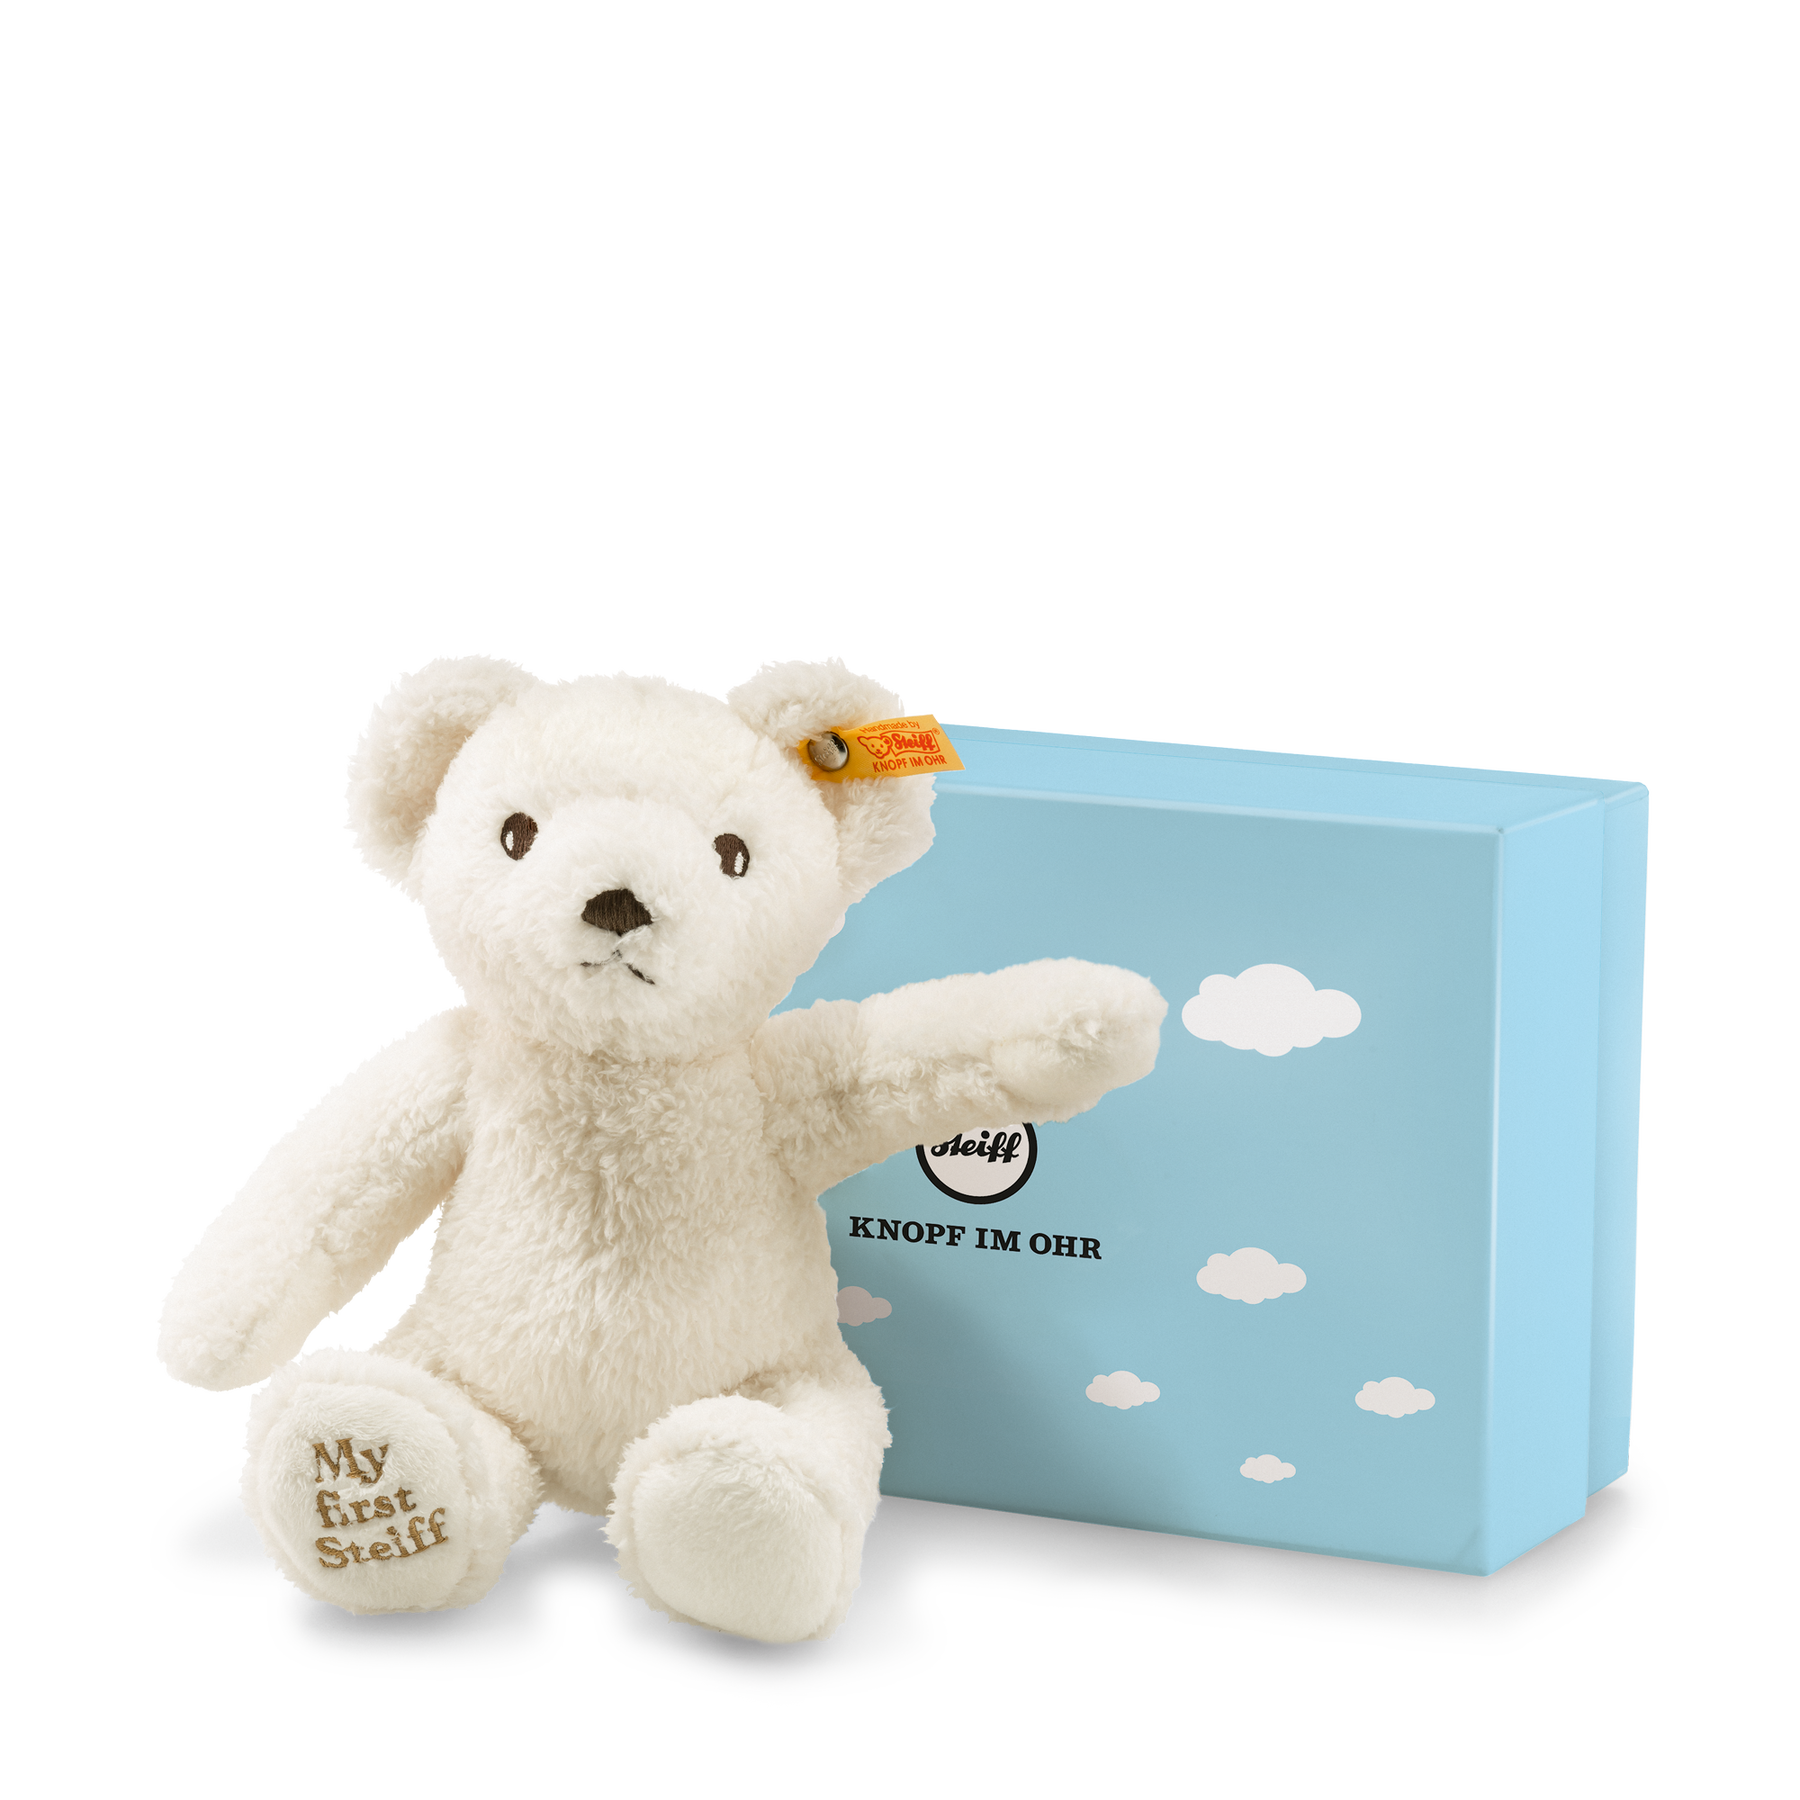 My first Steiff Teddy bear in gift box